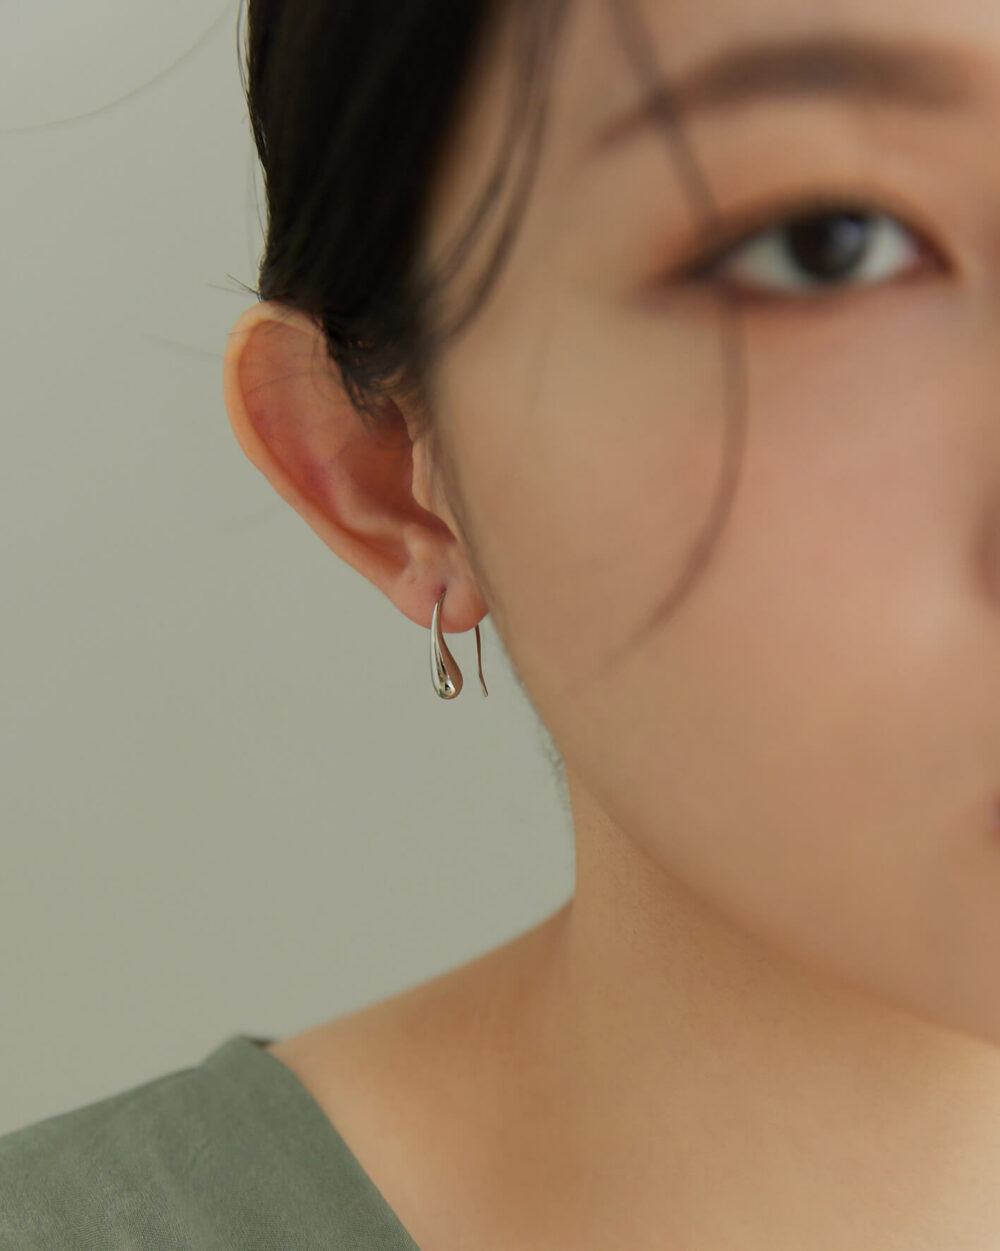 Eco安珂,韓國飾品,韓國耳環,耳針式耳環,C圈耳環,氣質耳環,後勾耳環